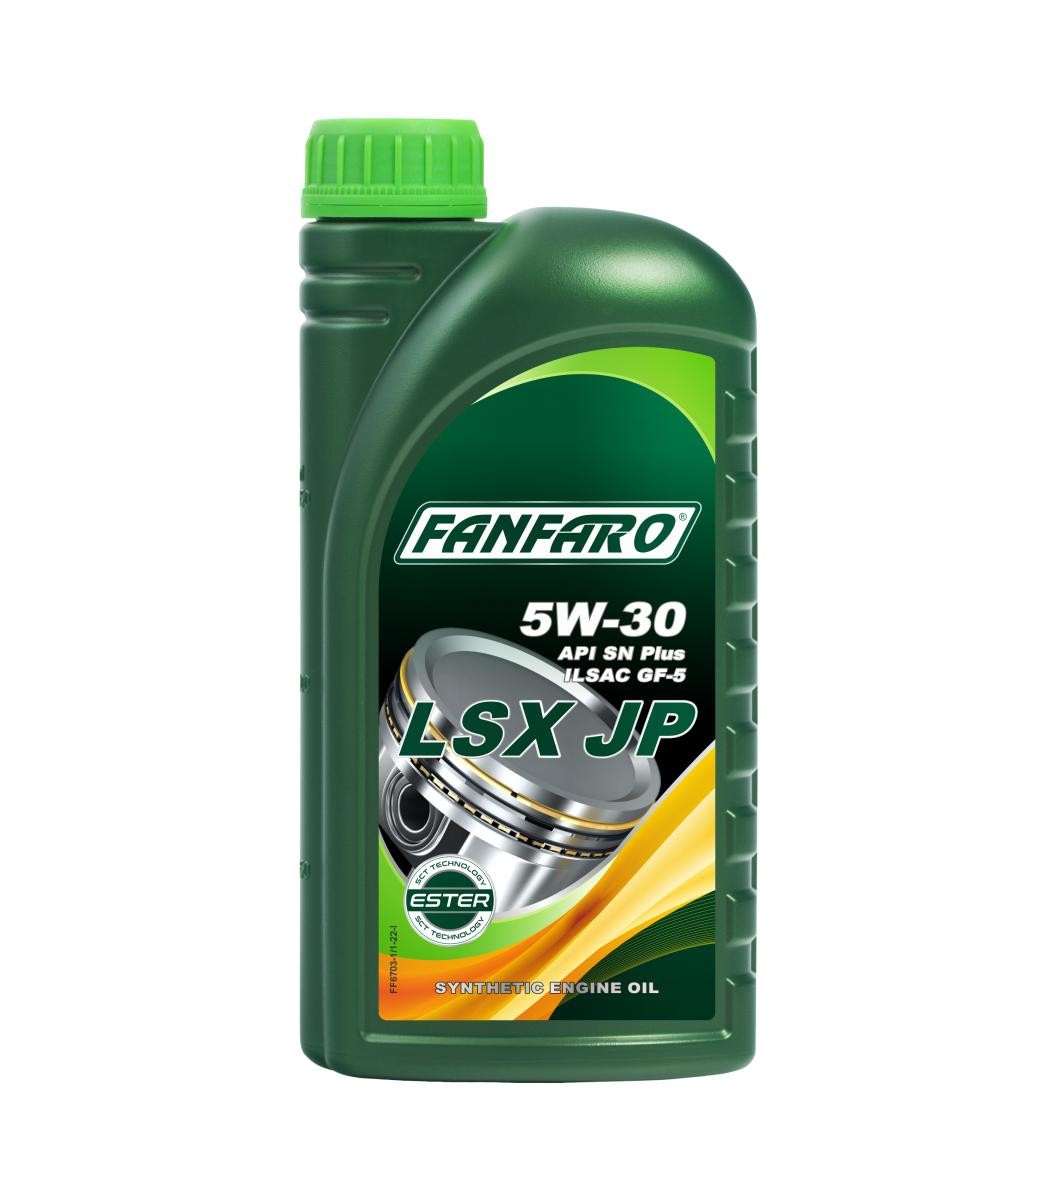 FANFARO Profi Line, LSX JP 5W-30, 1l, Synthetic Oil Motor oil FF6703-1 buy